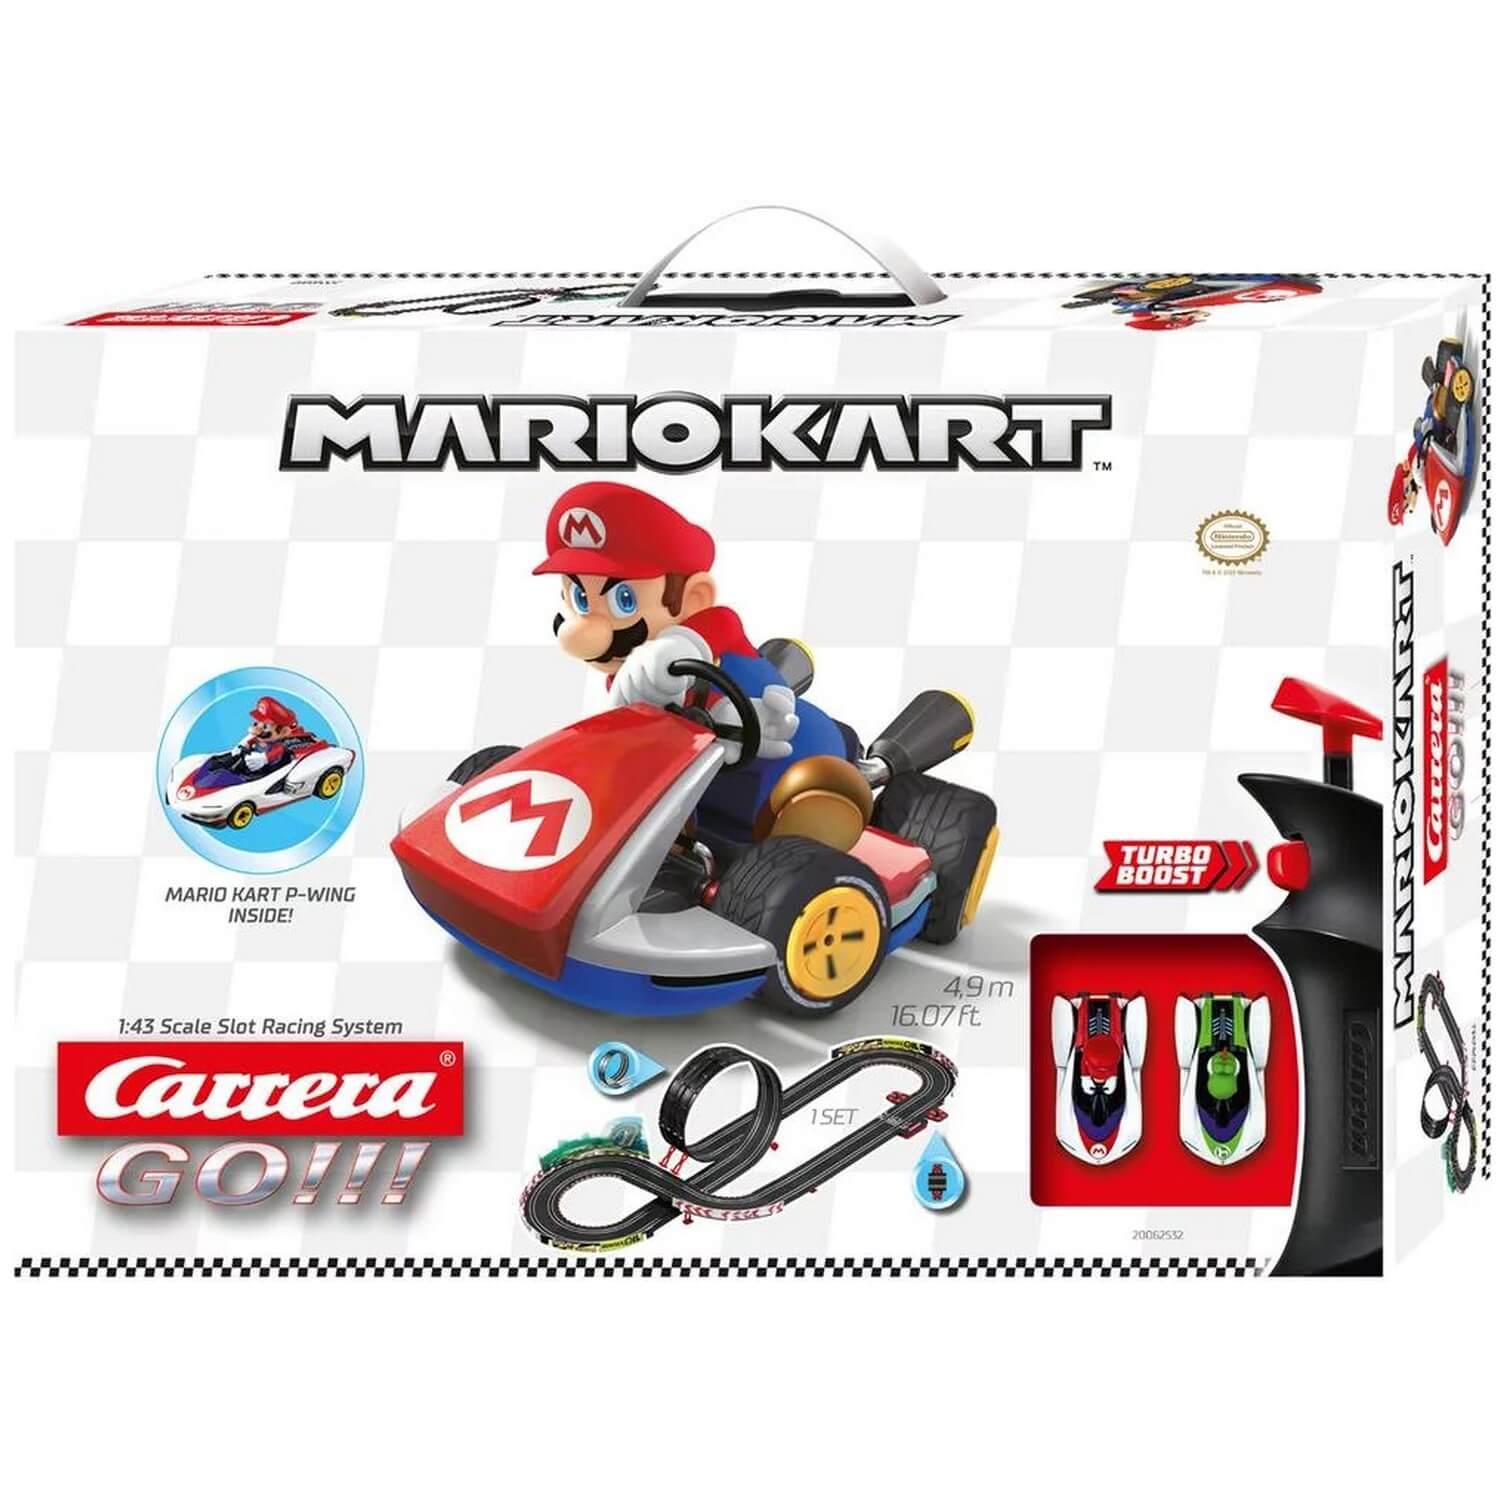 Circuit de voiture Carrera Go : Mario Kart P-Wing